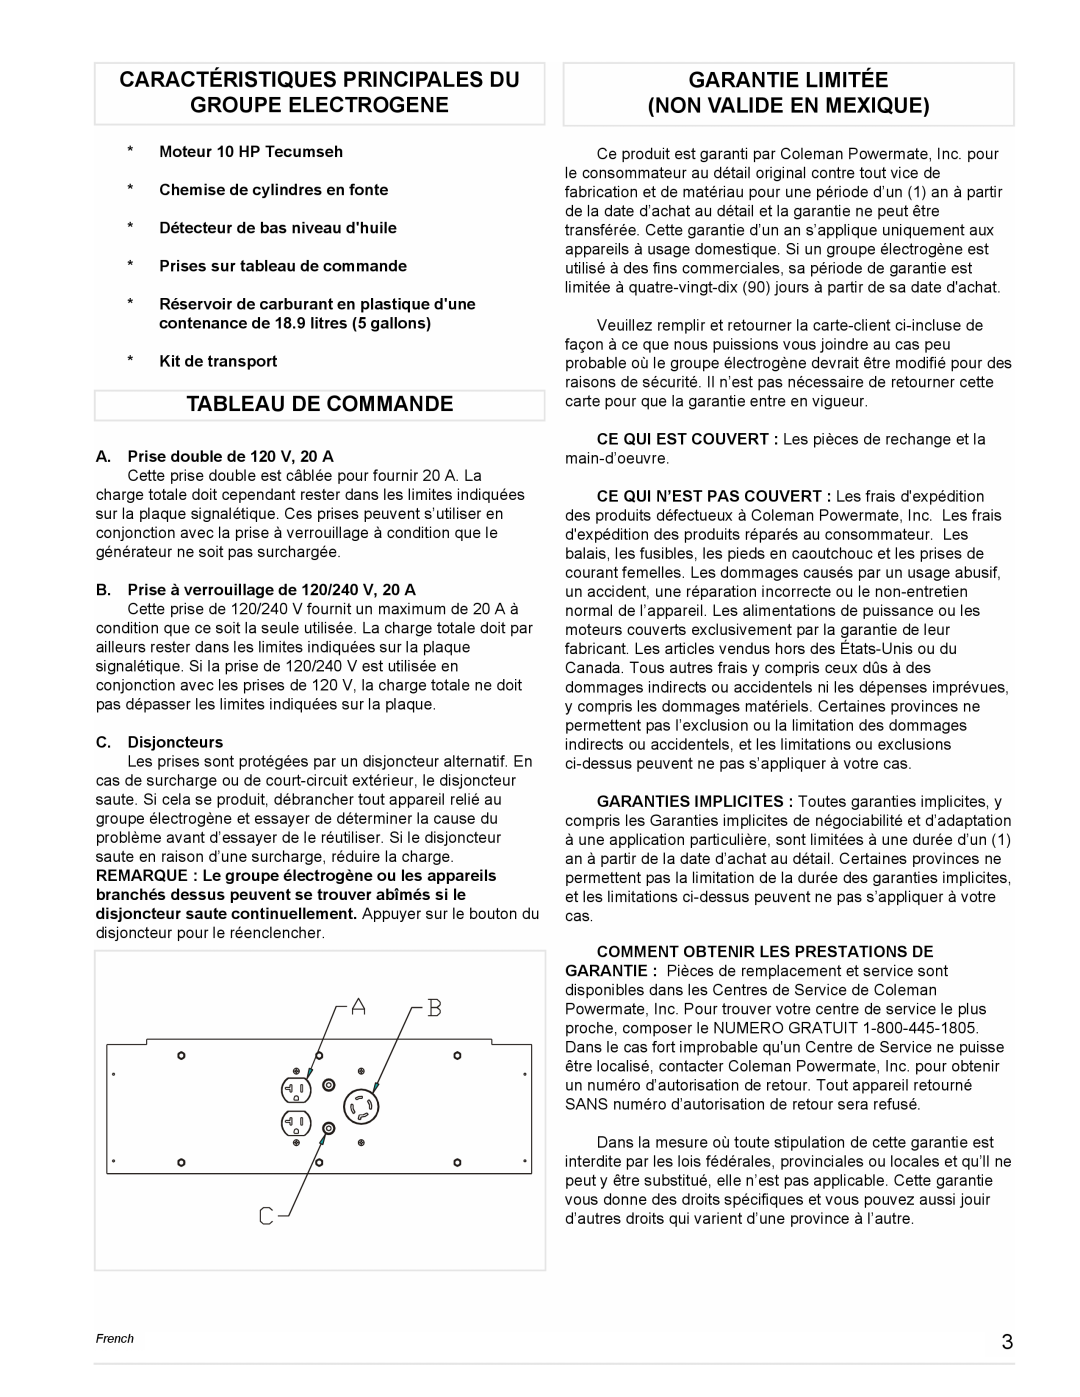 Coleman PM0525302.18 manual Caractéristiques Principales Du, Groupe Electrogene, Tableau De Commande 